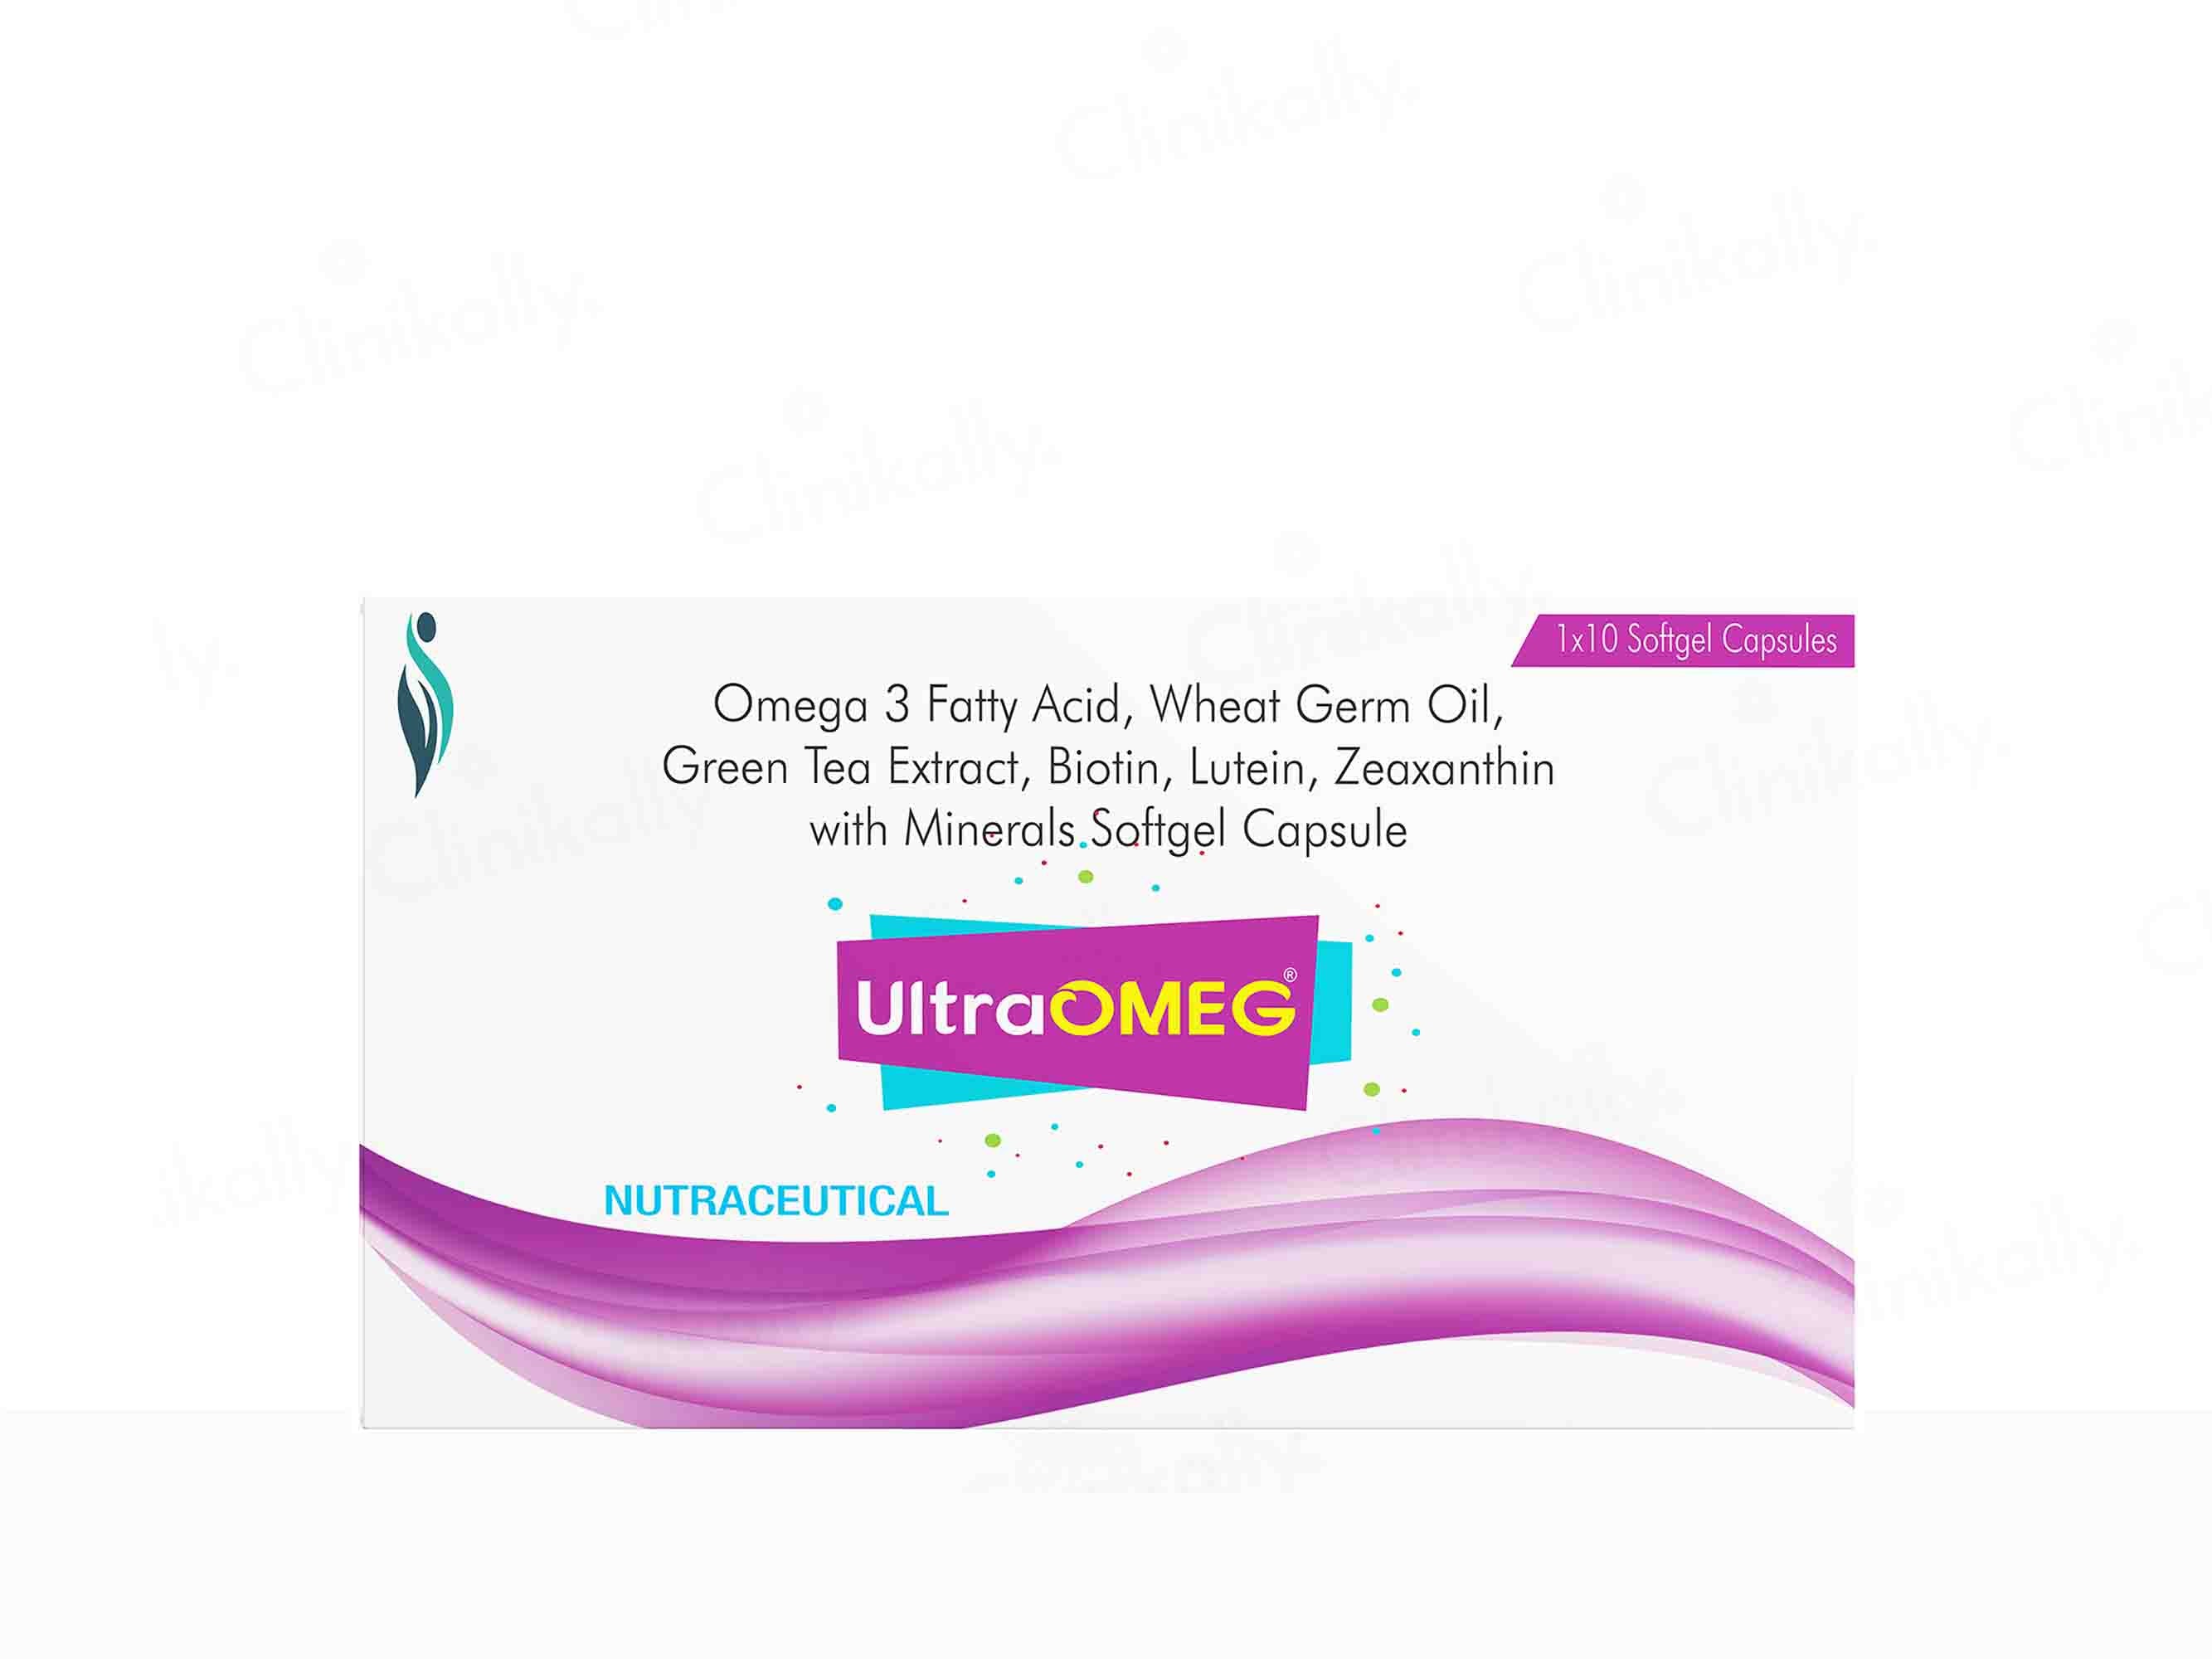 UltraOMEG Capsule - Clinikally